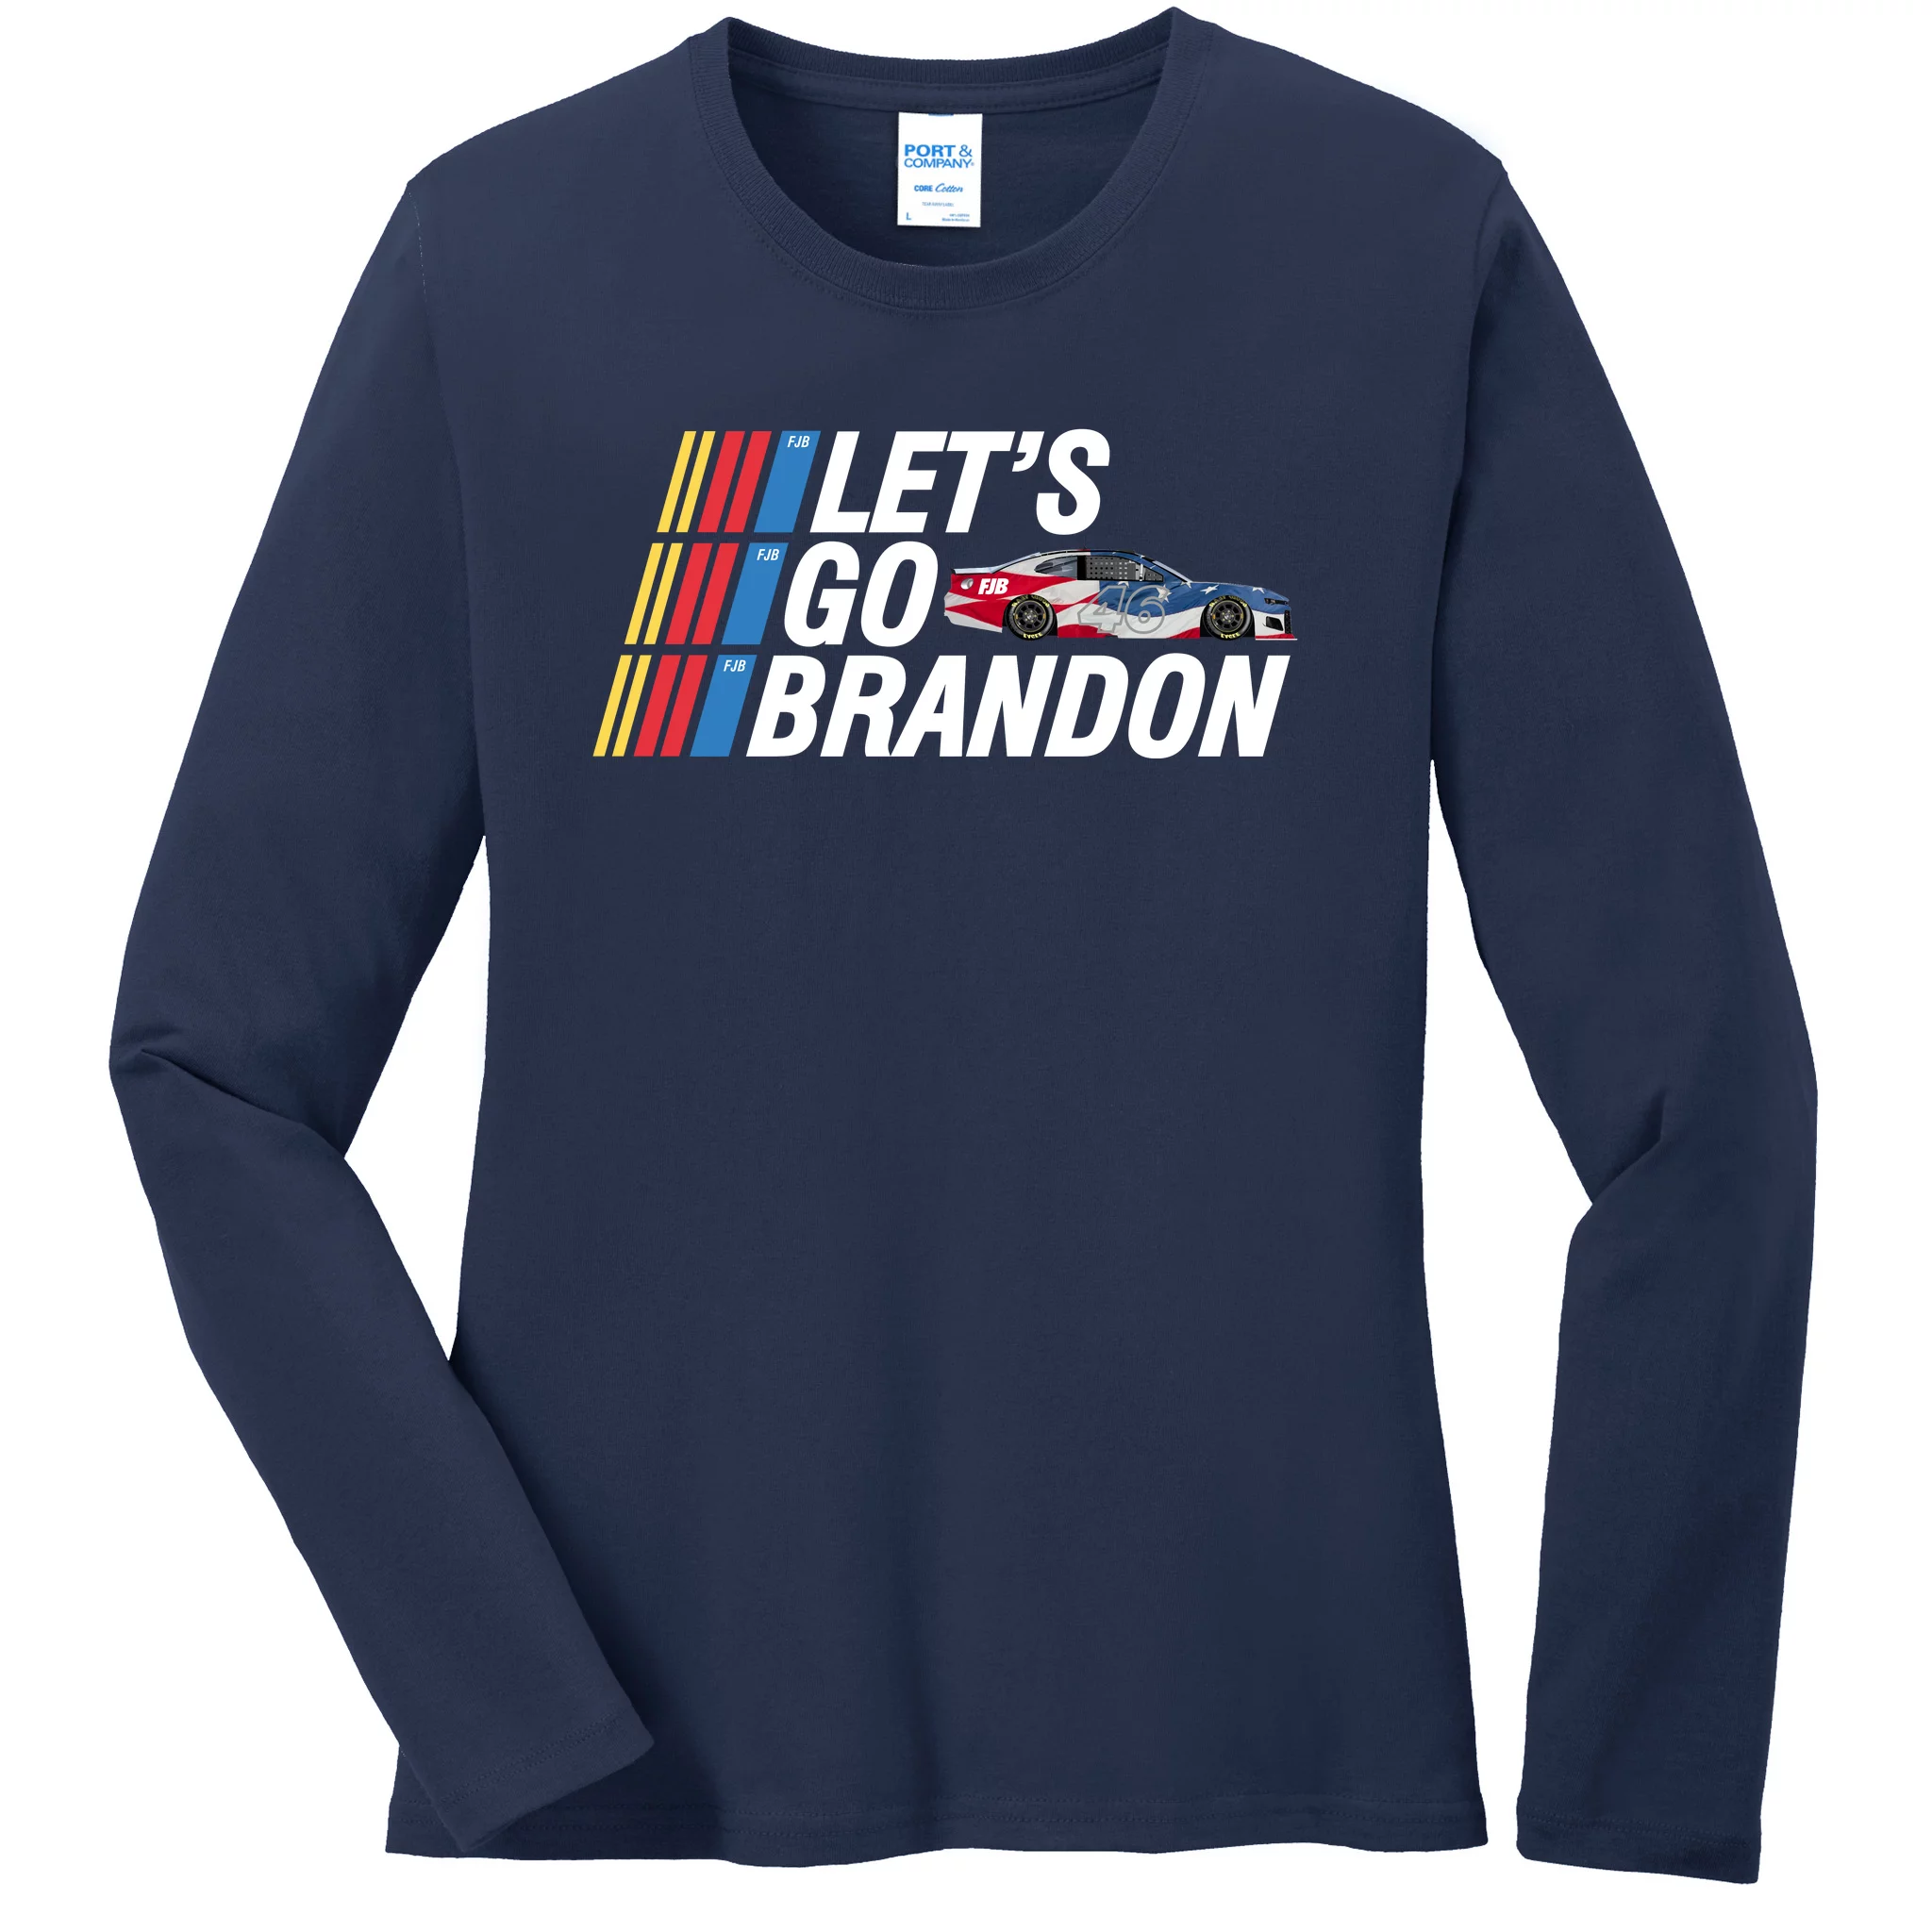 Let's Go Brandon Racing ORIGINAL Ladies Missy Fit Long Sleeve Shirt